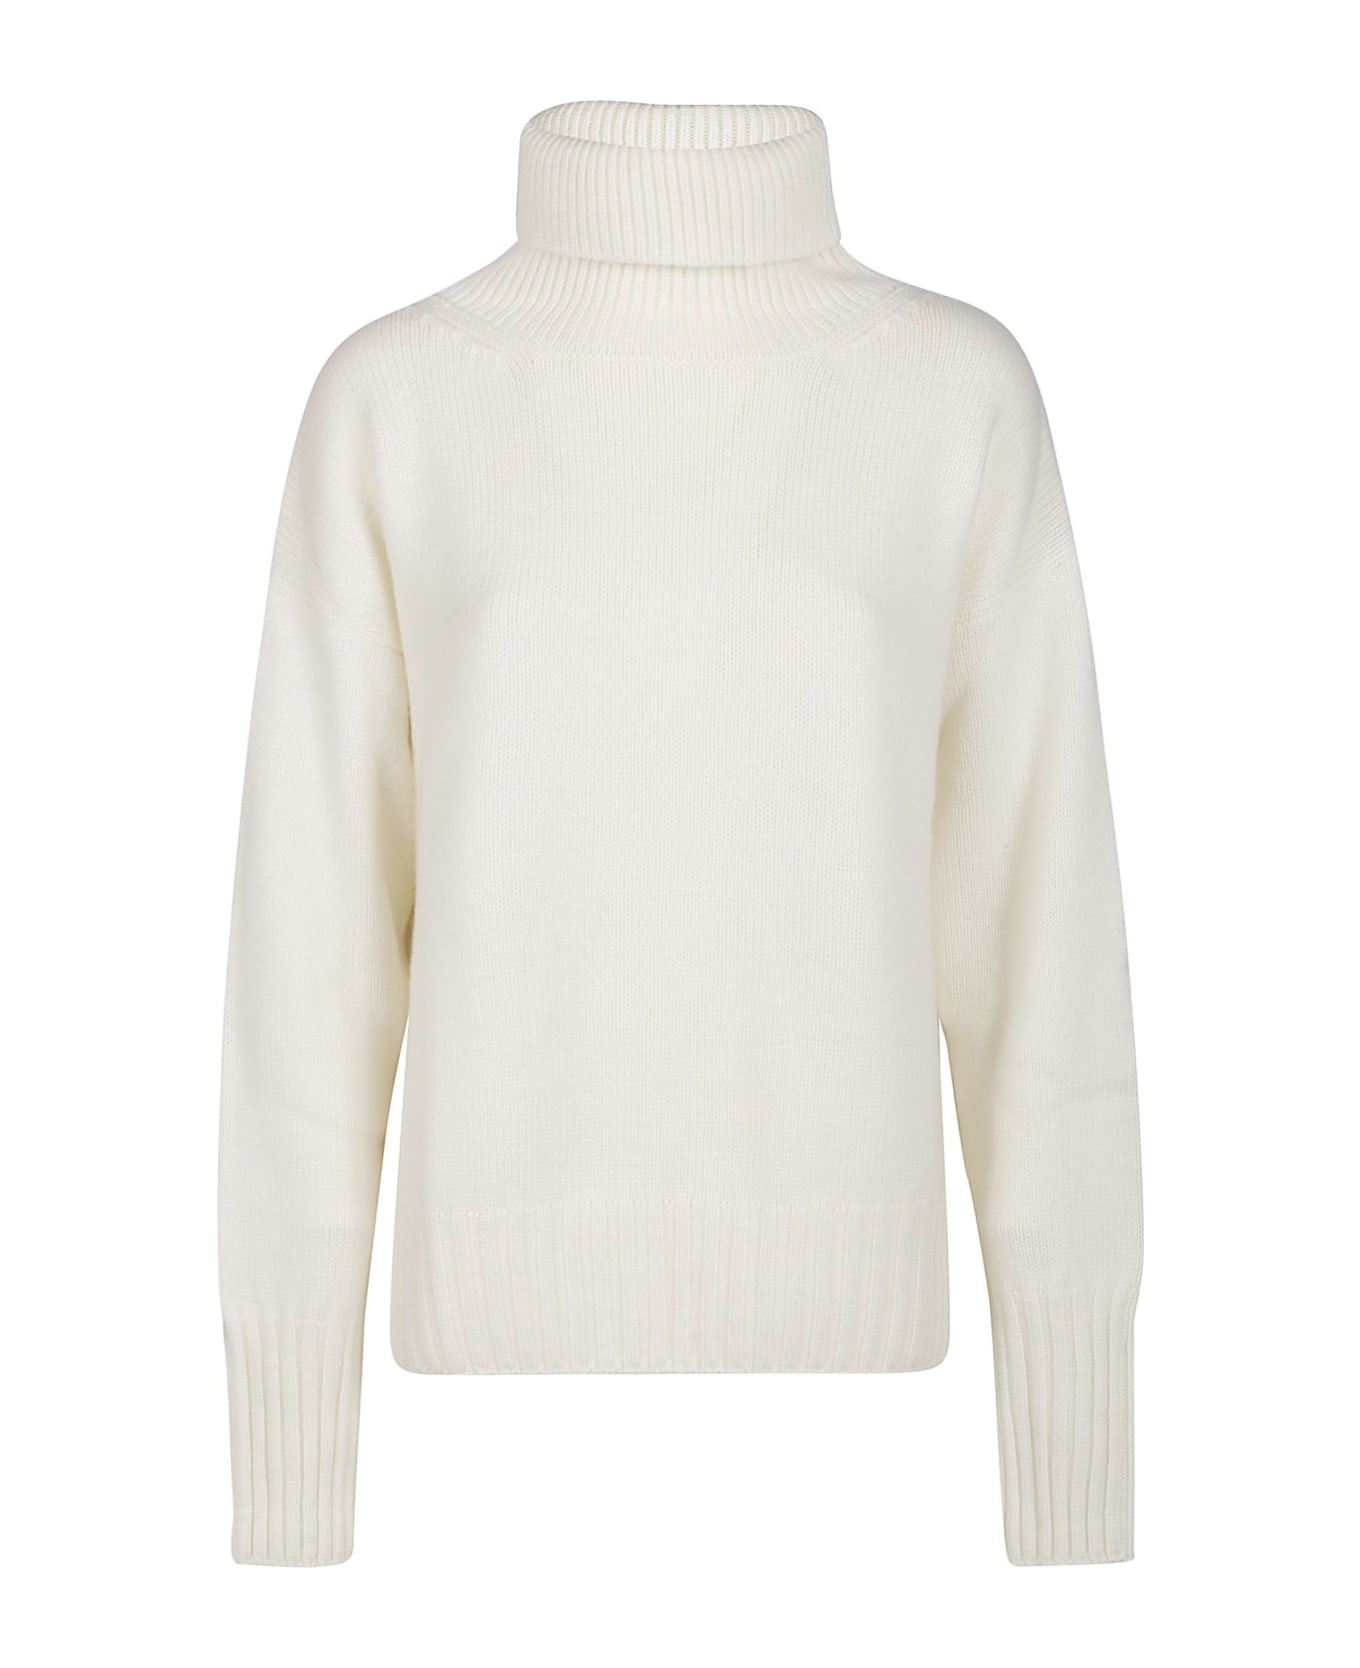 Wild Cashmere Beatrix Boxy Turtle Neck Sweater - Off White